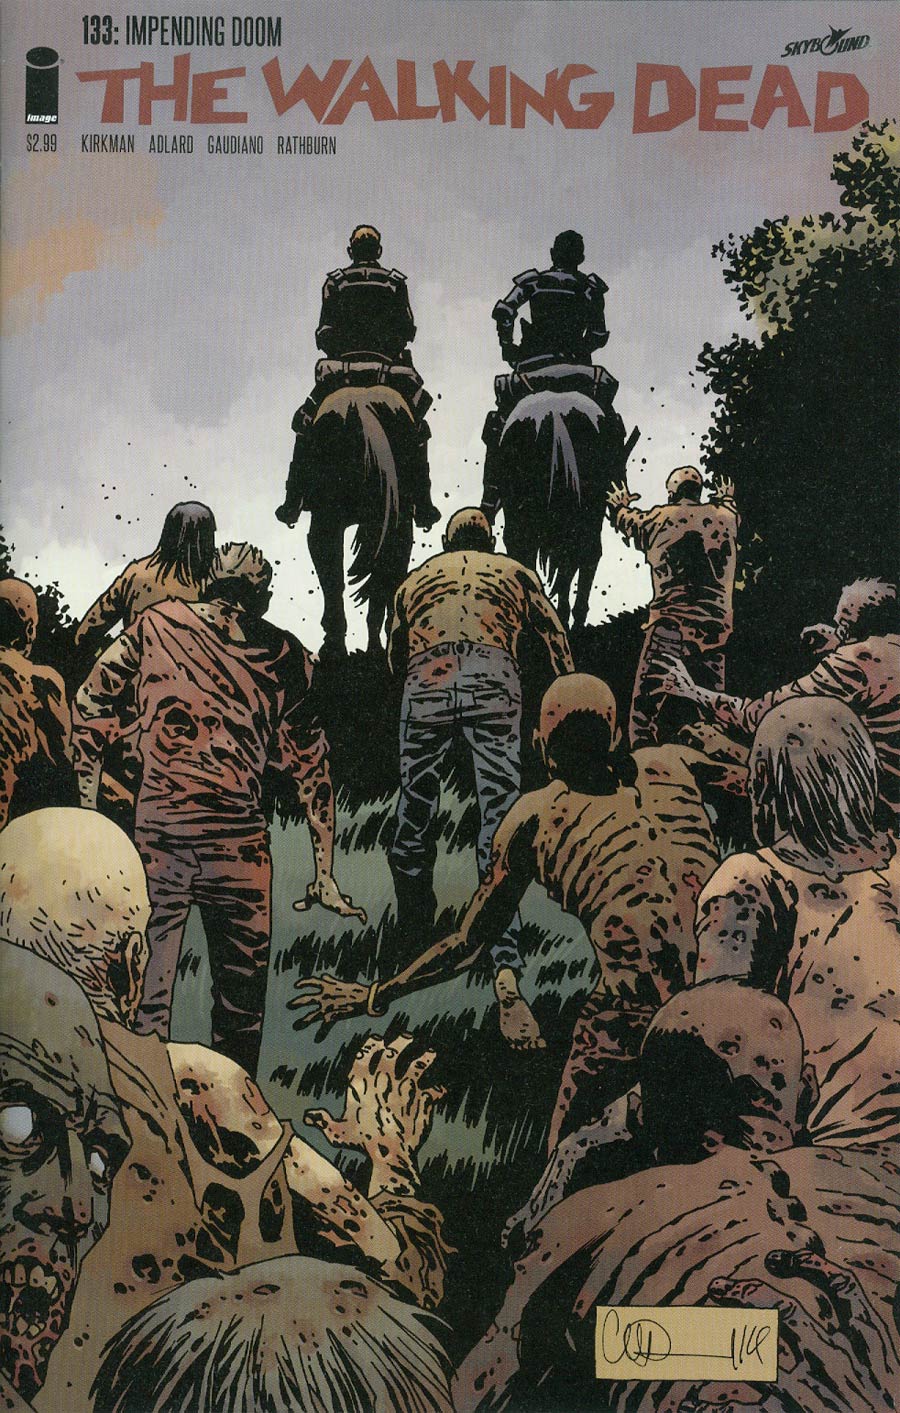 Walking Dead #133